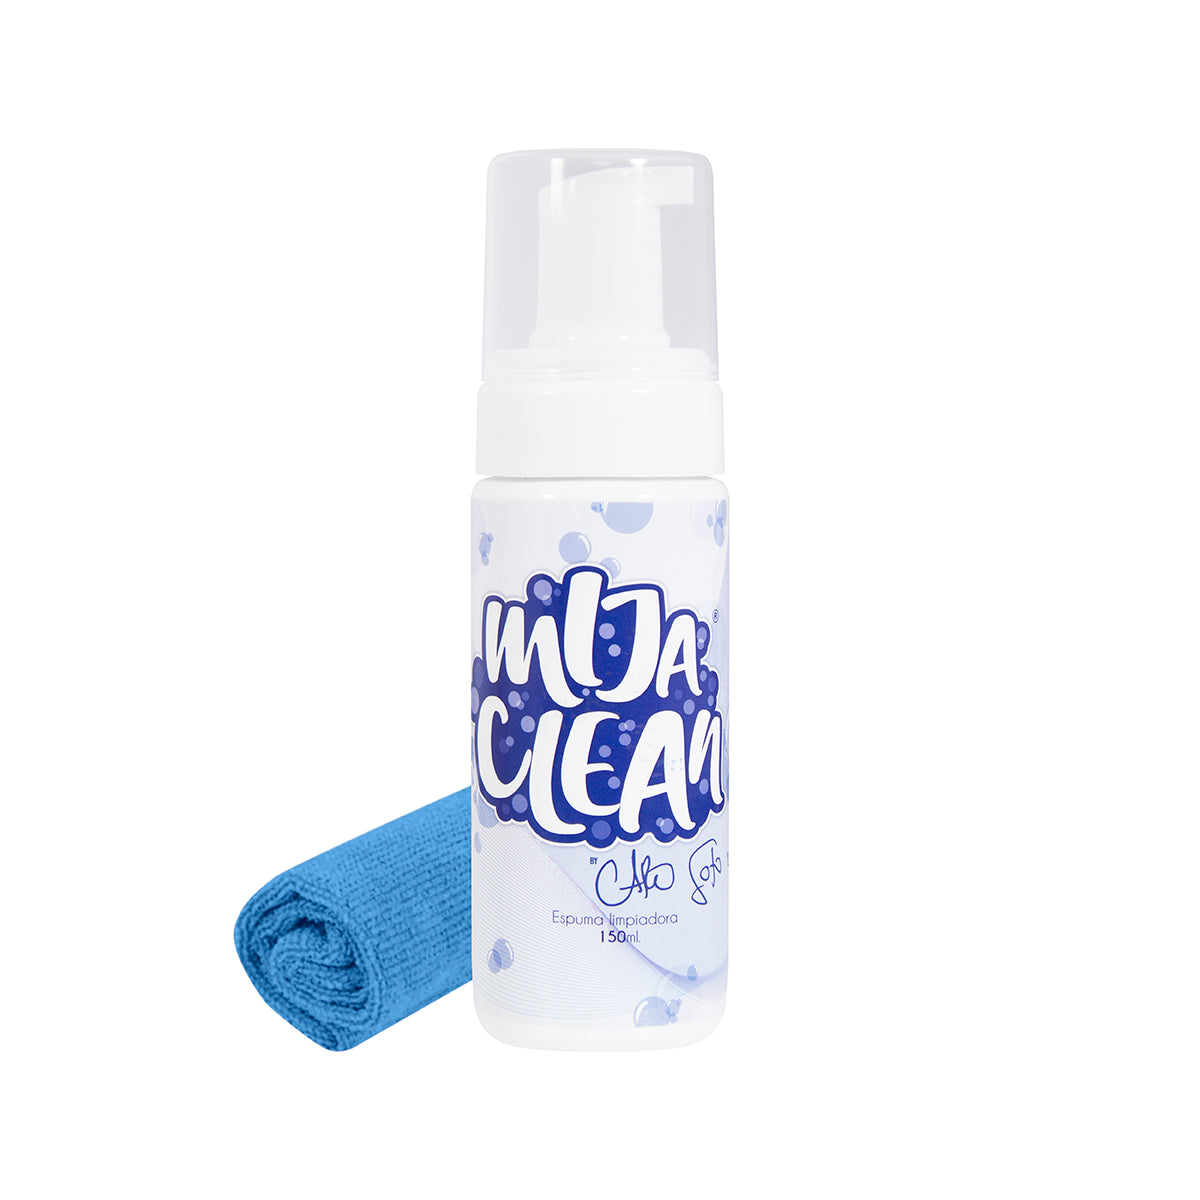 Mija Clean - Espuma limpiadora